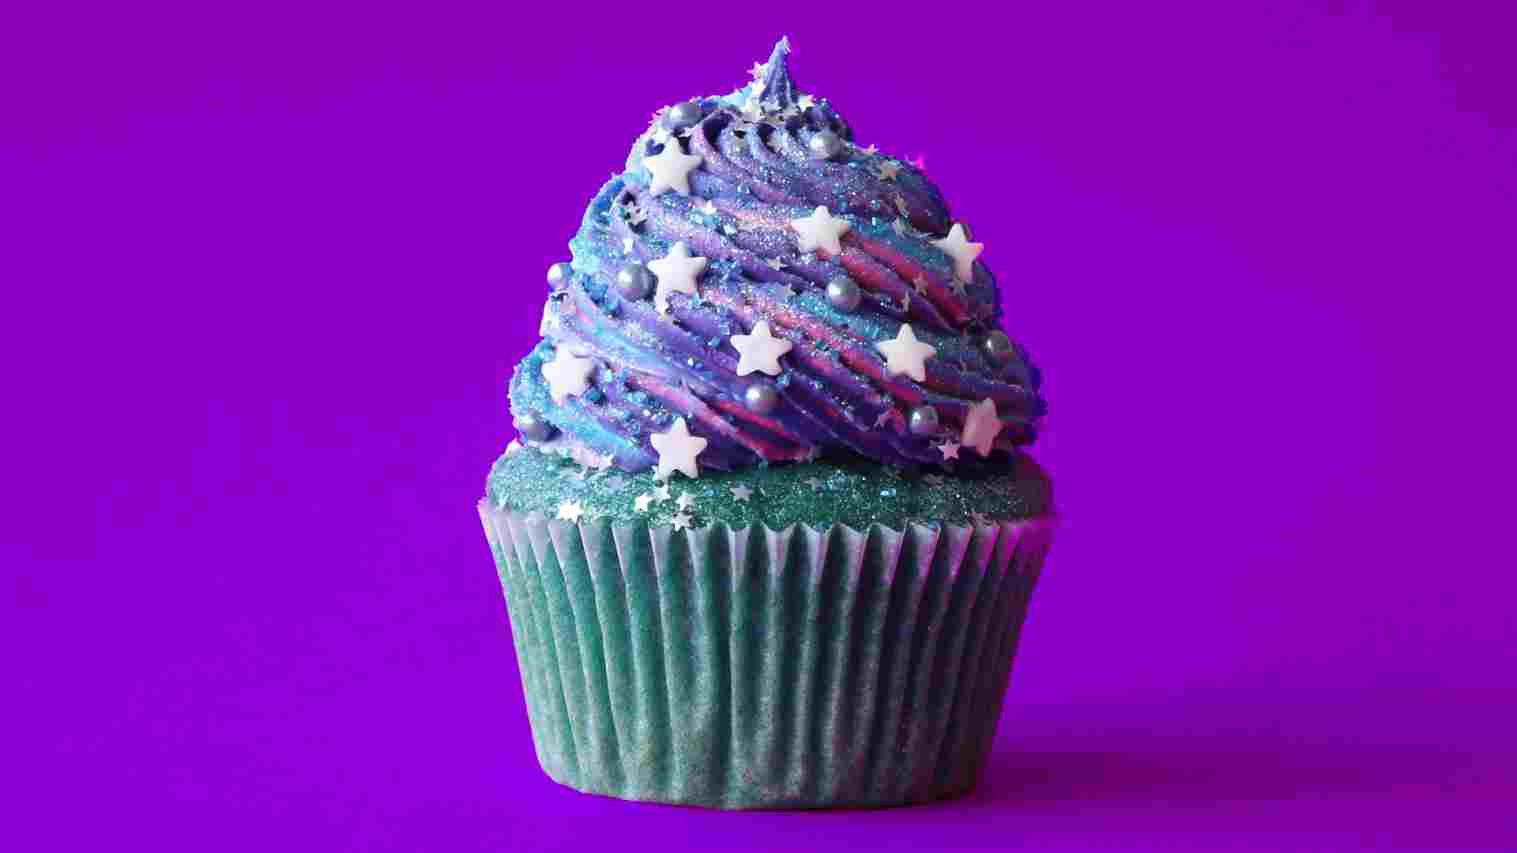 ks fondo de pantalla hd,magdalena,crema de mantequilla,formación de hielo,pastel,púrpura